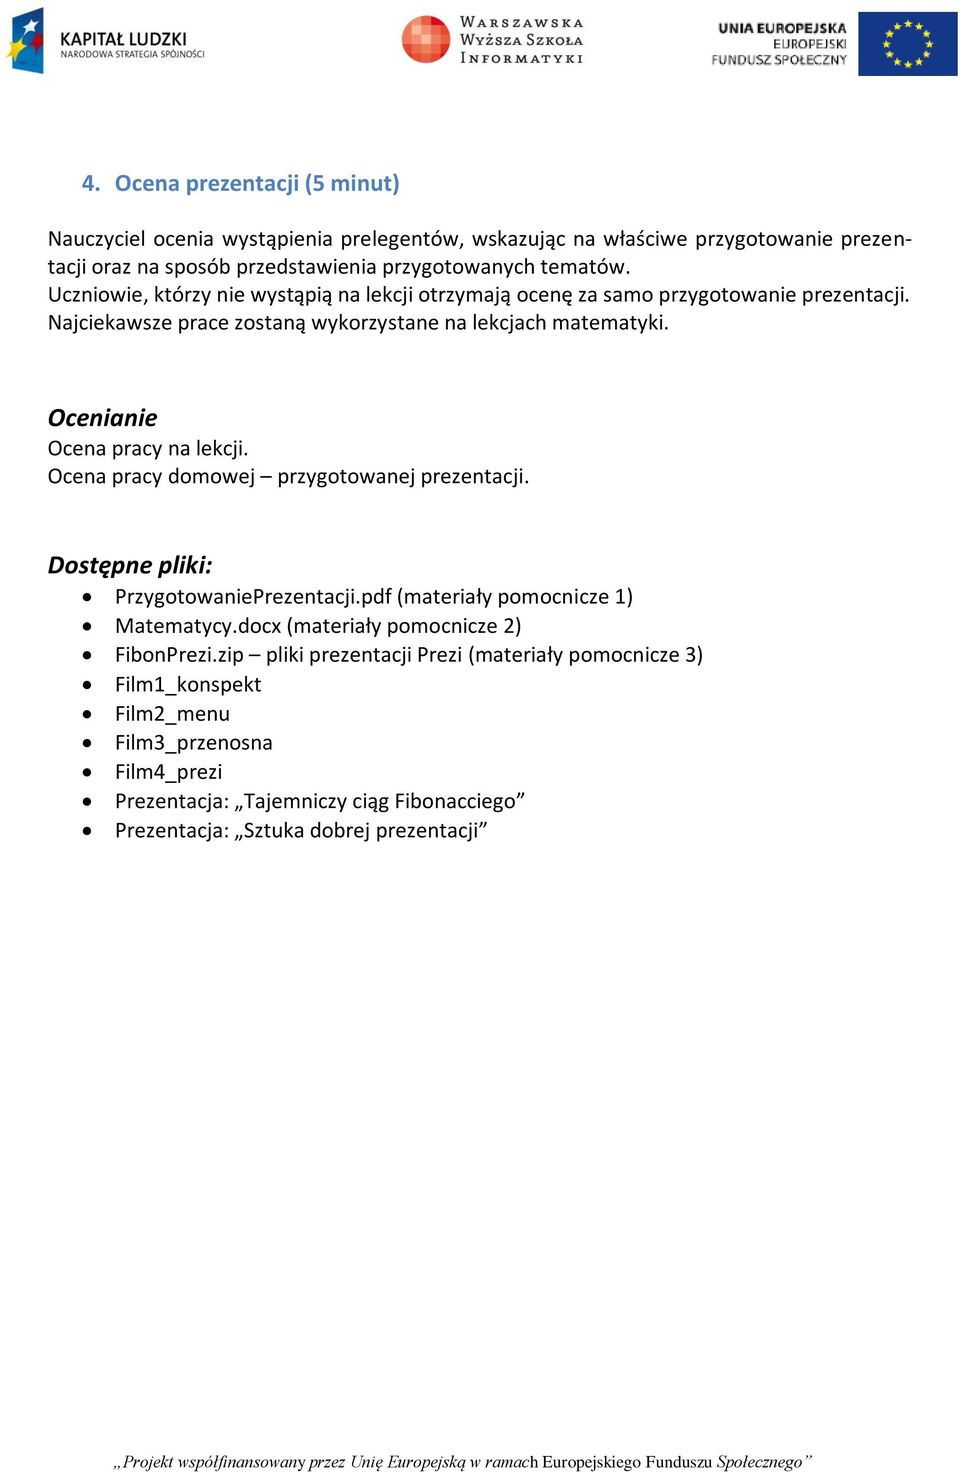 Ocenianie Ocena pracy na lekcji. Ocena pracy domowej przygotowanej prezentacji. Dostępne pliki: PrzygotowaniePrezentacji.pdf (materiały pomocnicze 1) Matematycy.